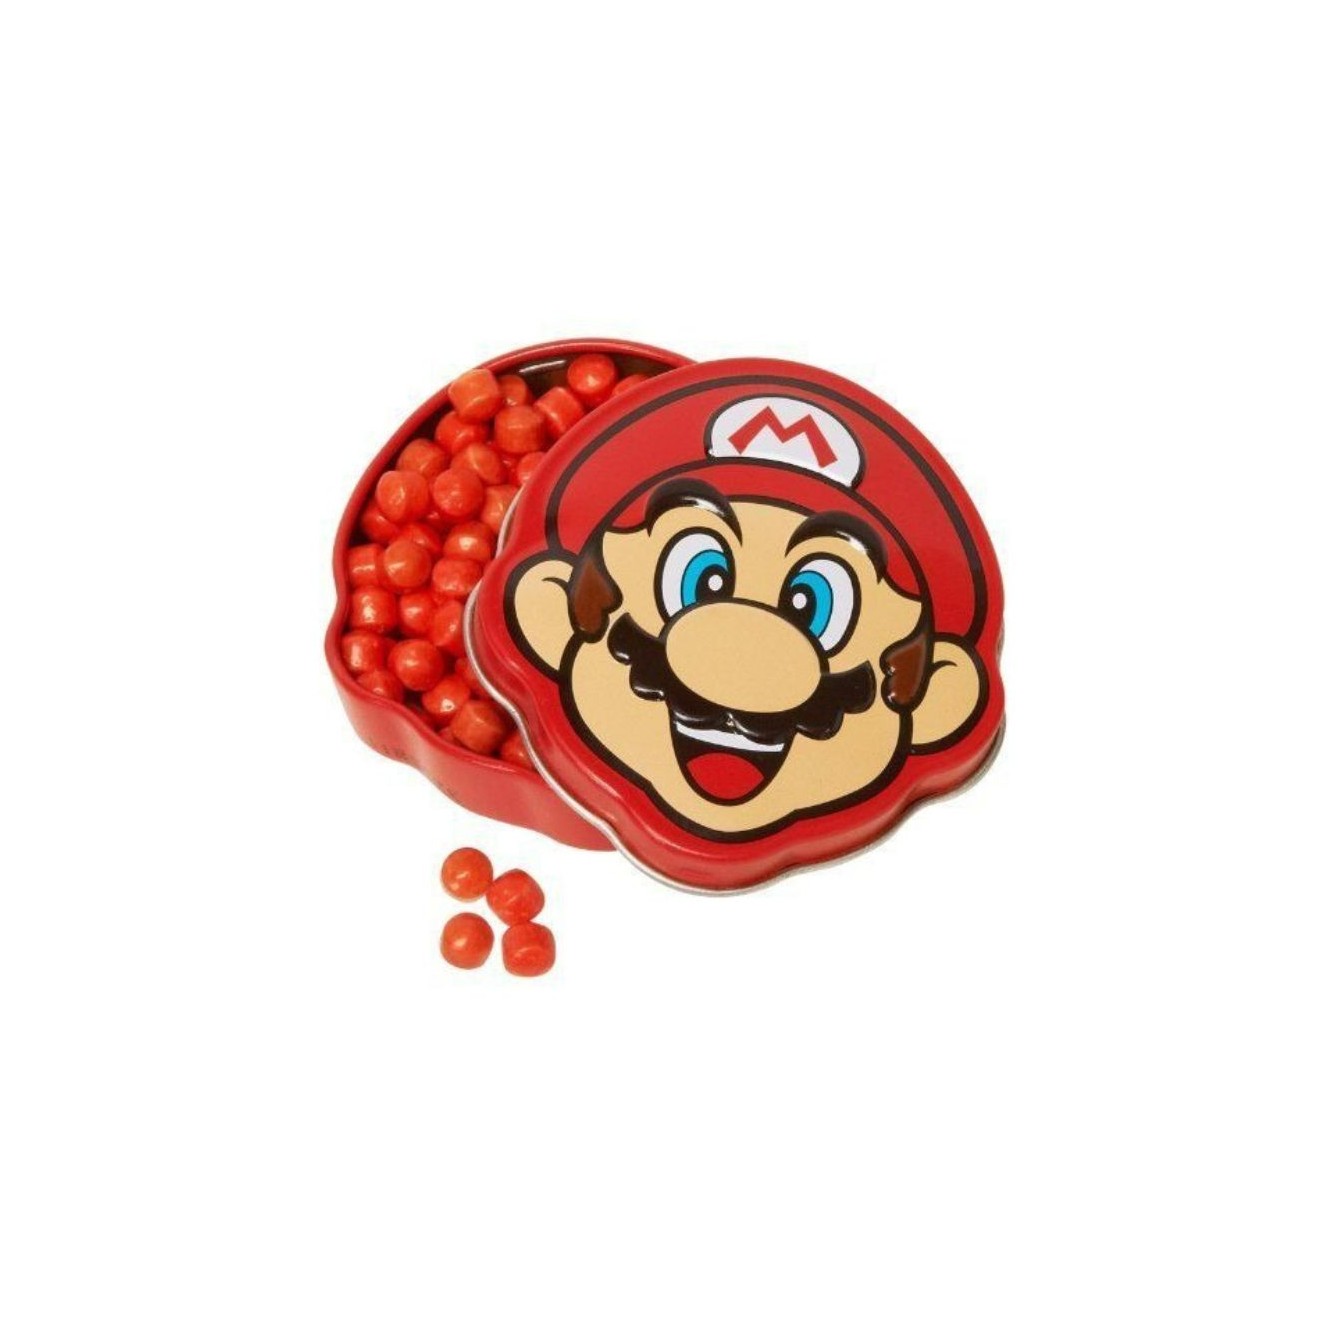 Bonbons Nintendo Mario Brick Breakin' - testa di super Mario con caramelle